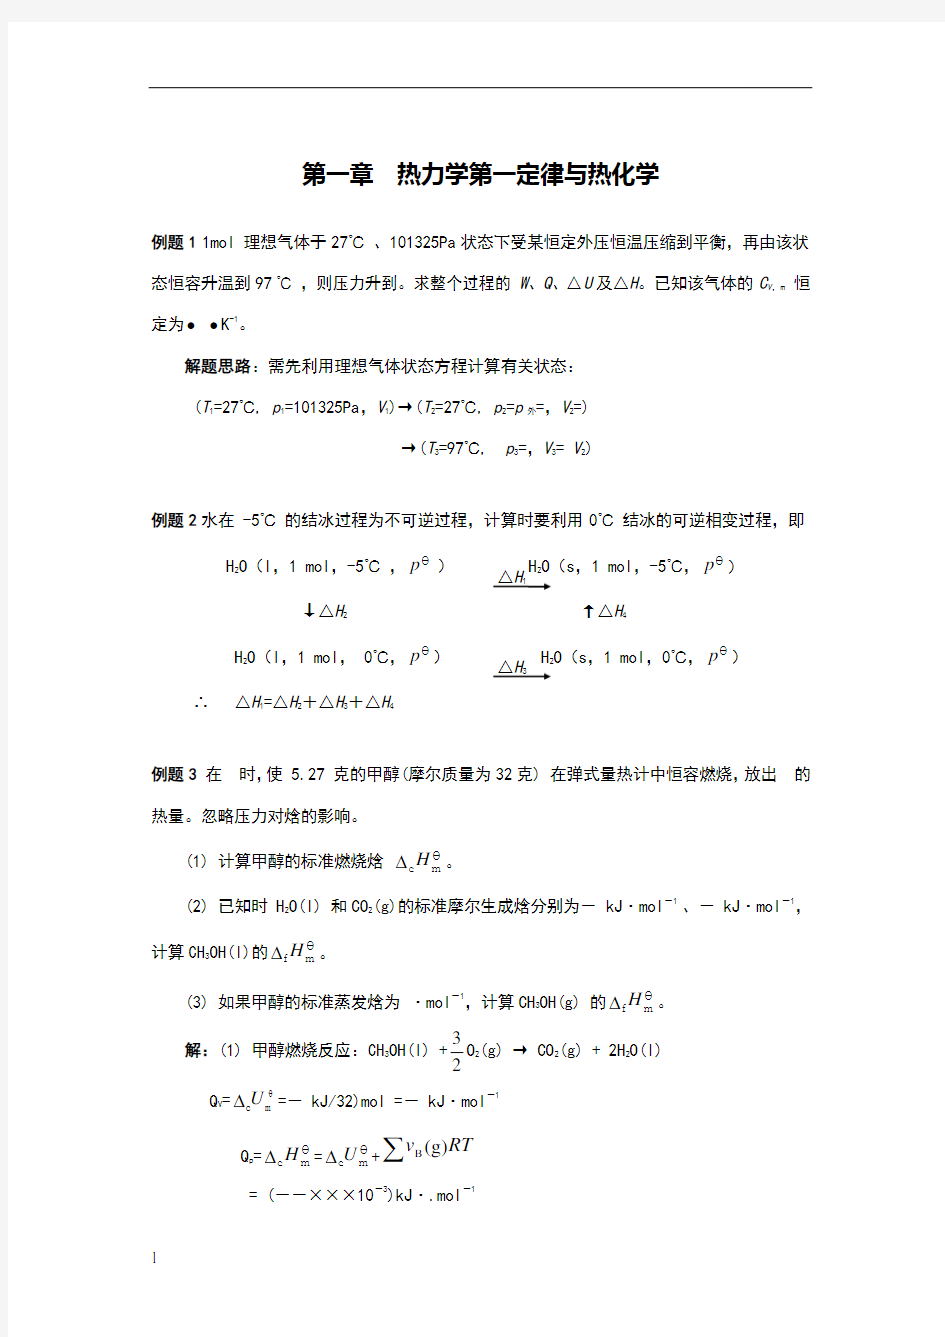 南京大学《物理化学》每章典型例题